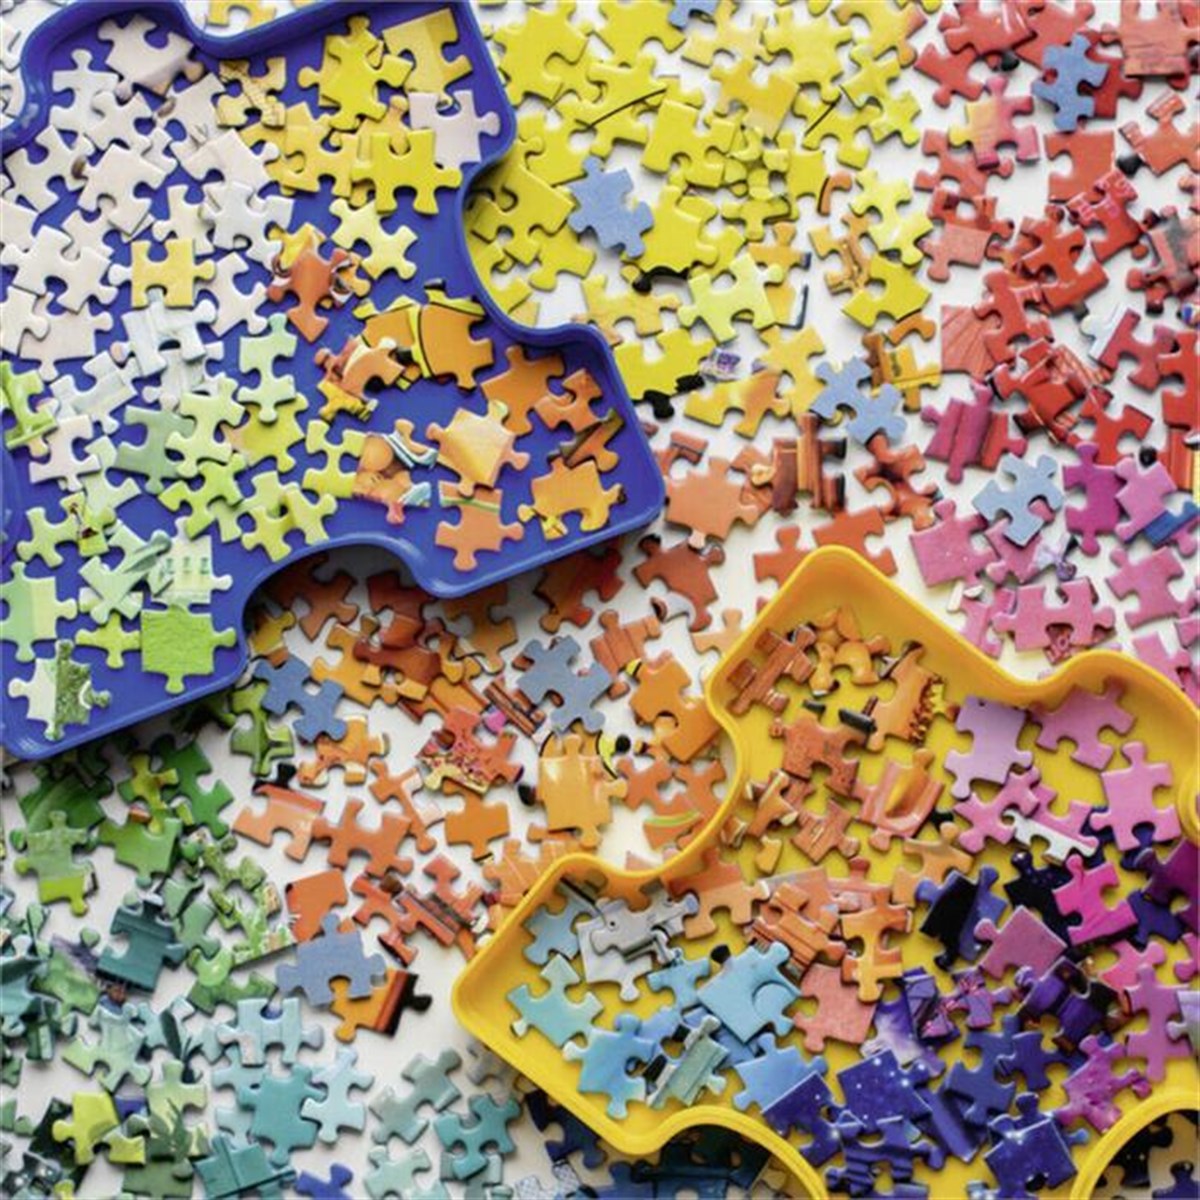 Ravensburger 1000 Parça Puzzle Puzzlers Palette 152742 | Toysall